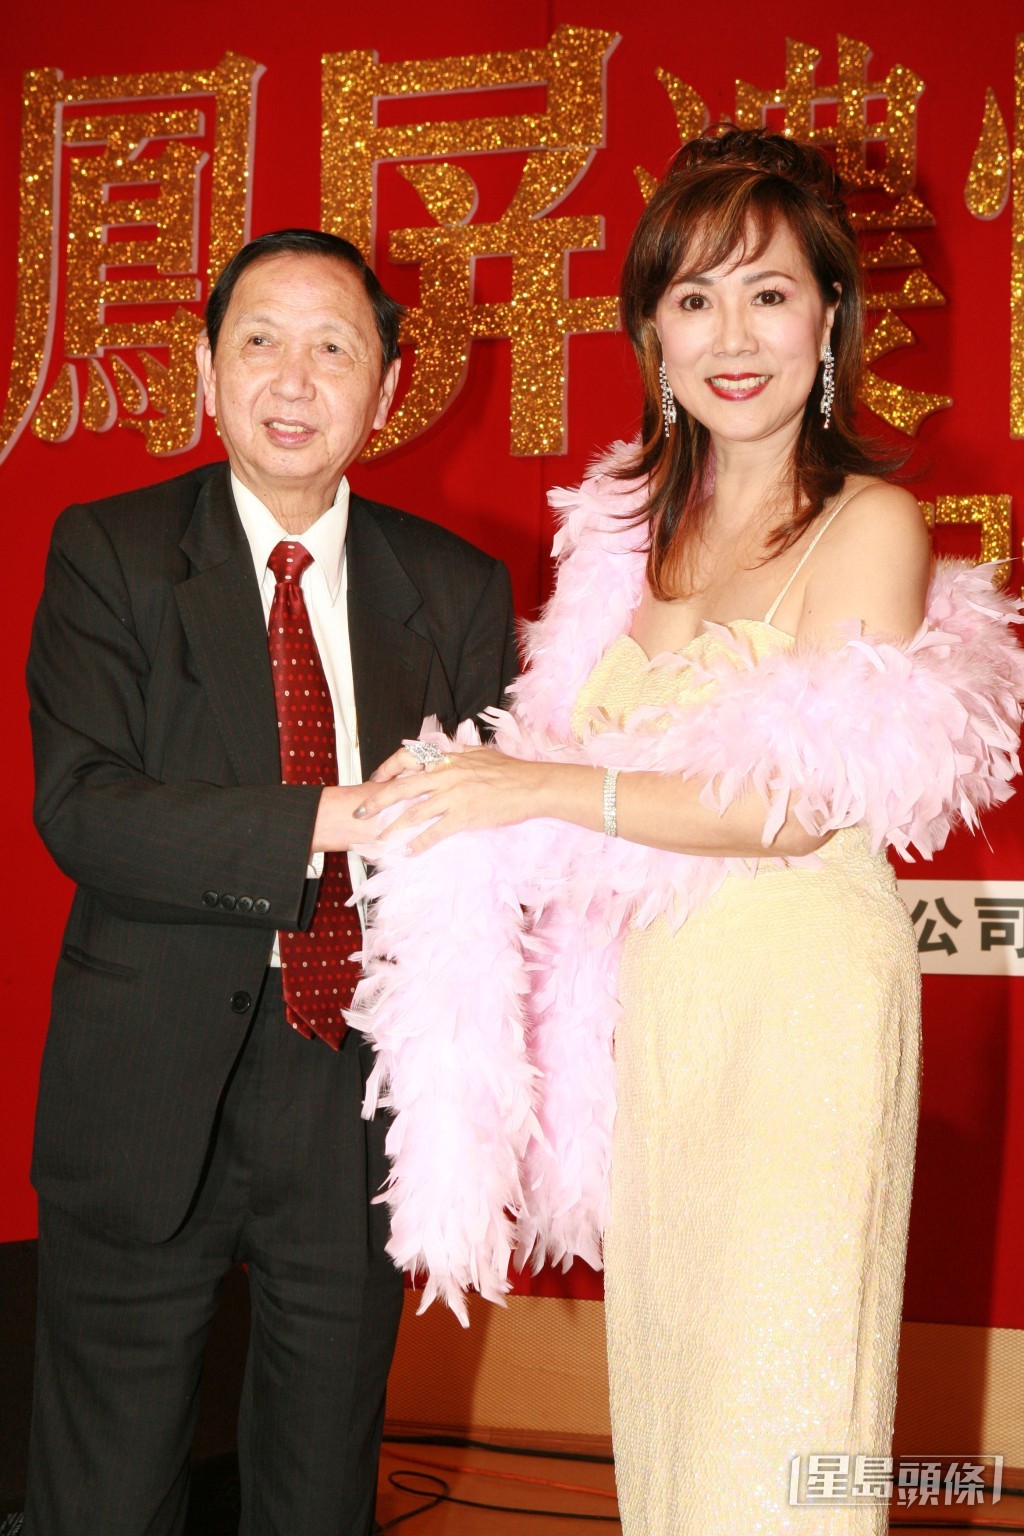 劉鳳屏為《劉鳳屏濃情相聚演唱會2007》舉行記者會時，與張耀榮合照。